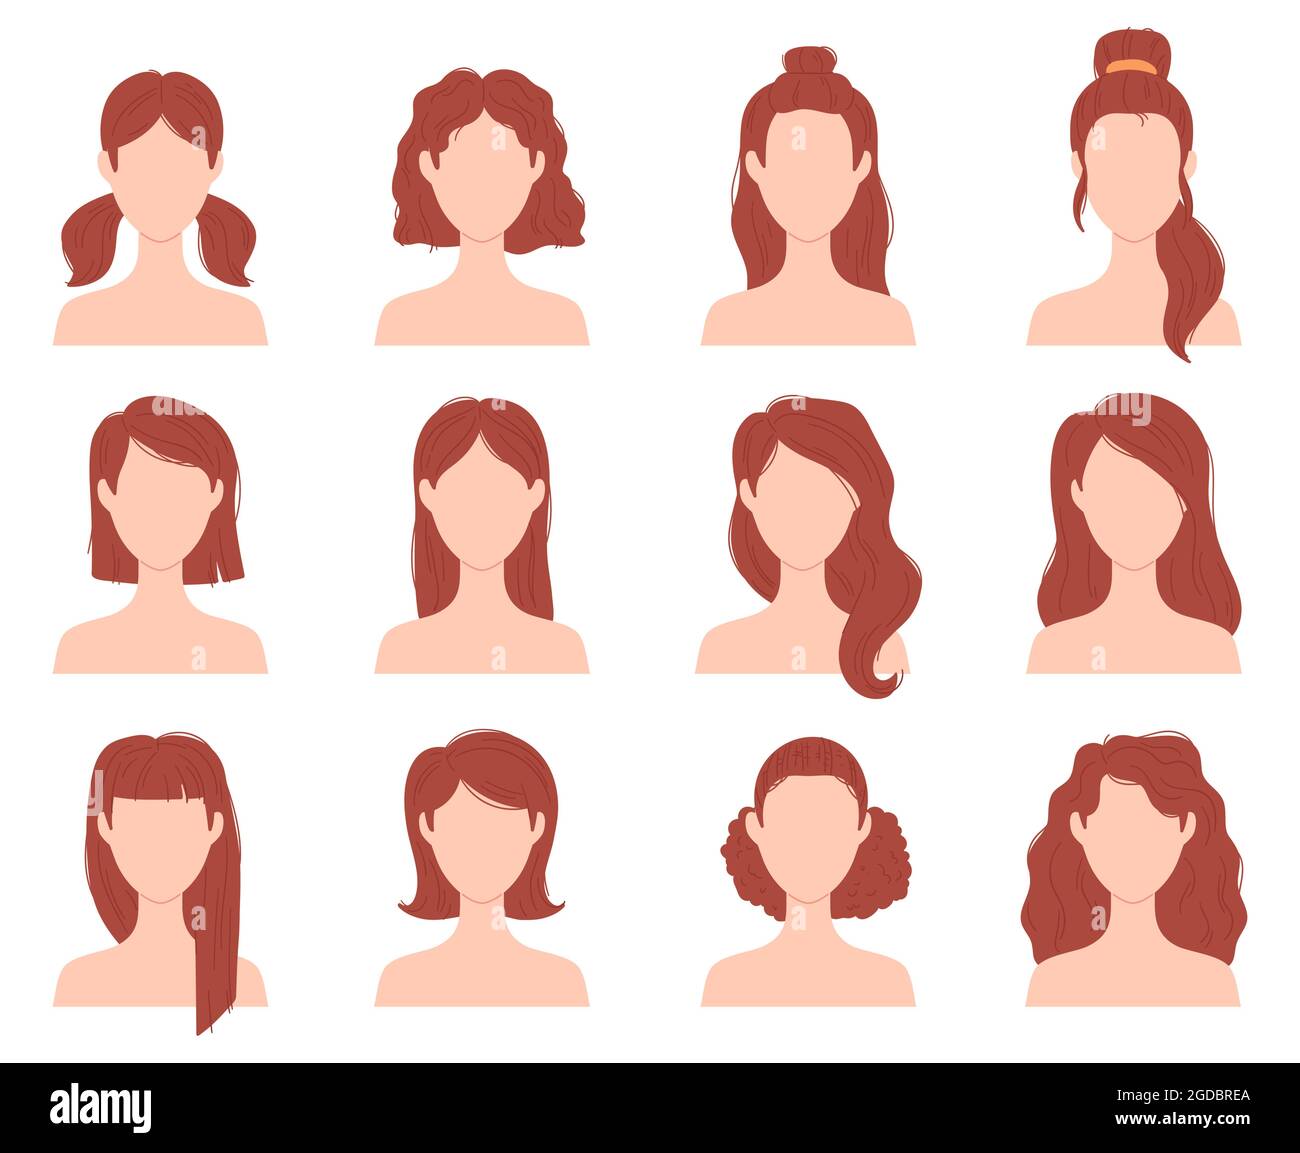 Cartoon weibliche Mode Frisur für kurze, lange und lockiges Haar. Frauenkopf mit Haarschnitten, Pferdeschwanz und Brötchen. Flache Mädchen Frisuren Vektor-Set Stock Vektor